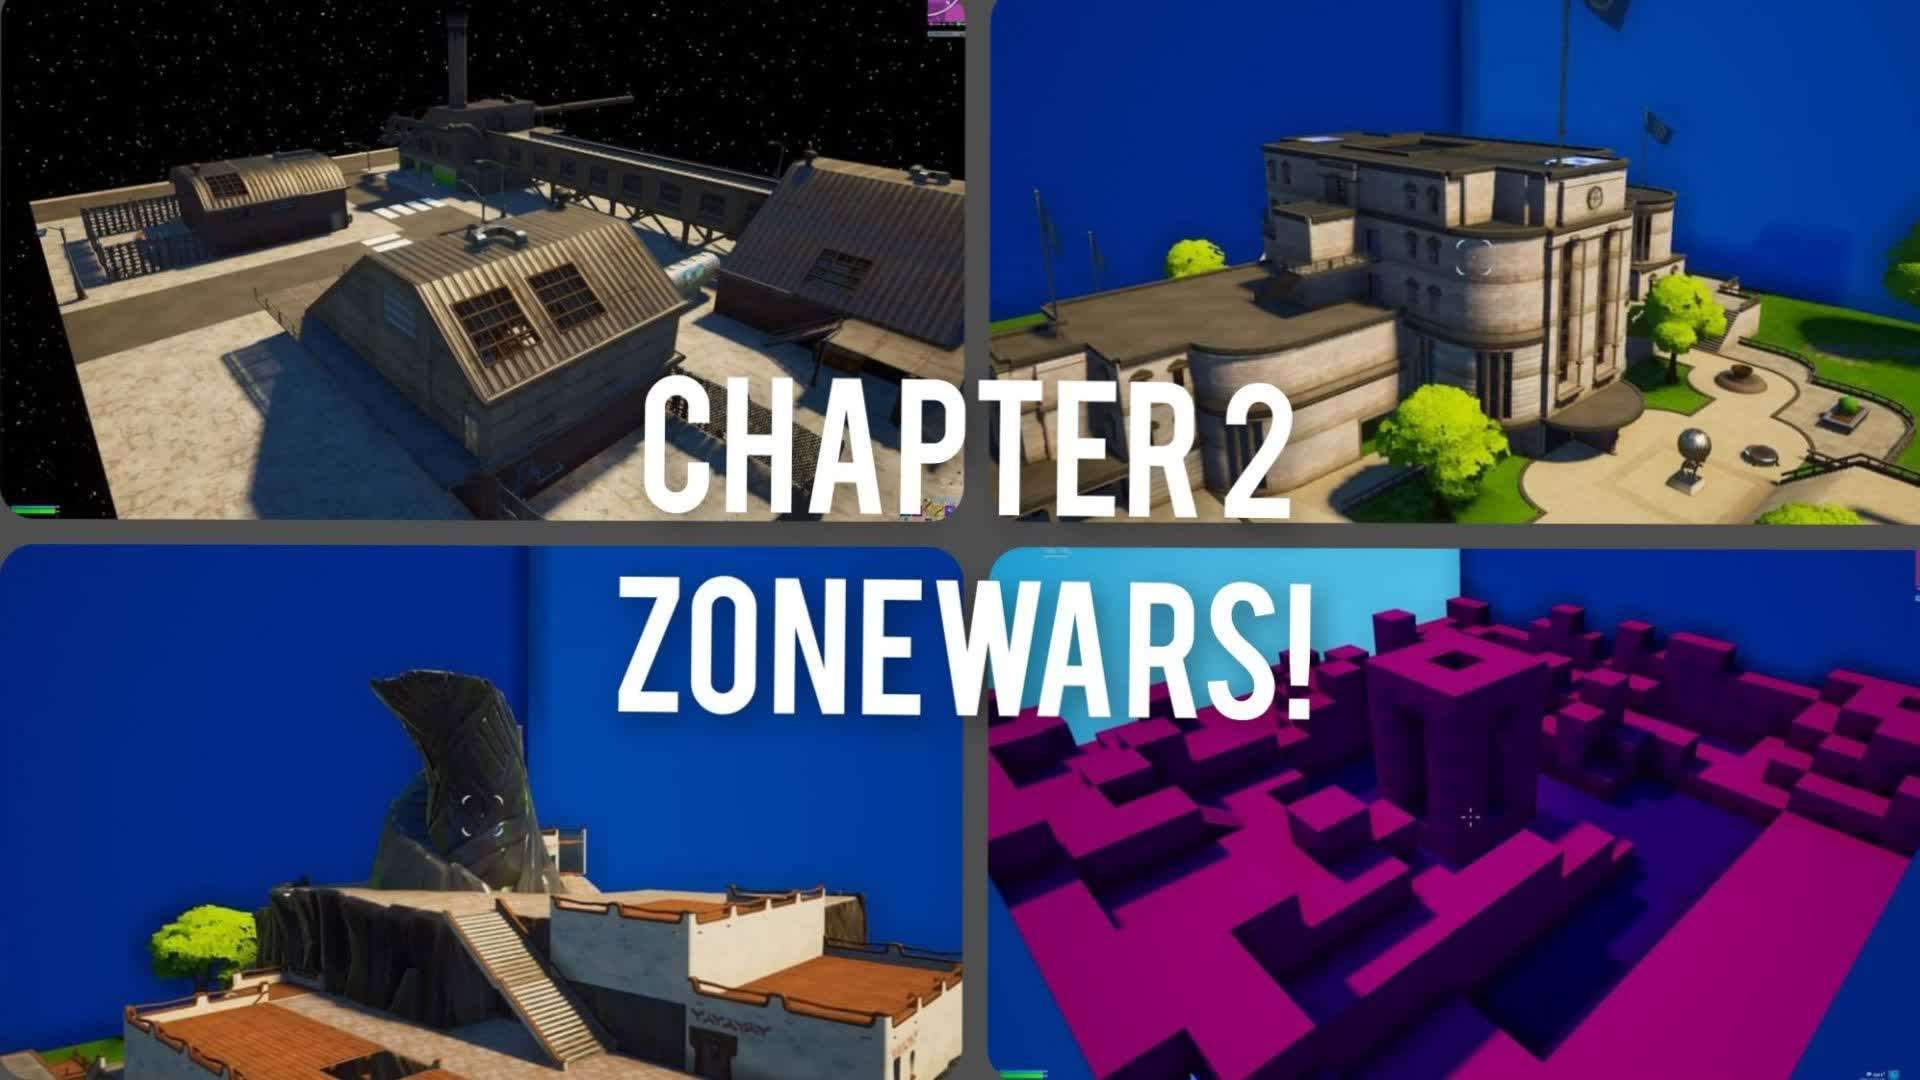 Chapter 2 Zonewars: 1 Round per Season!